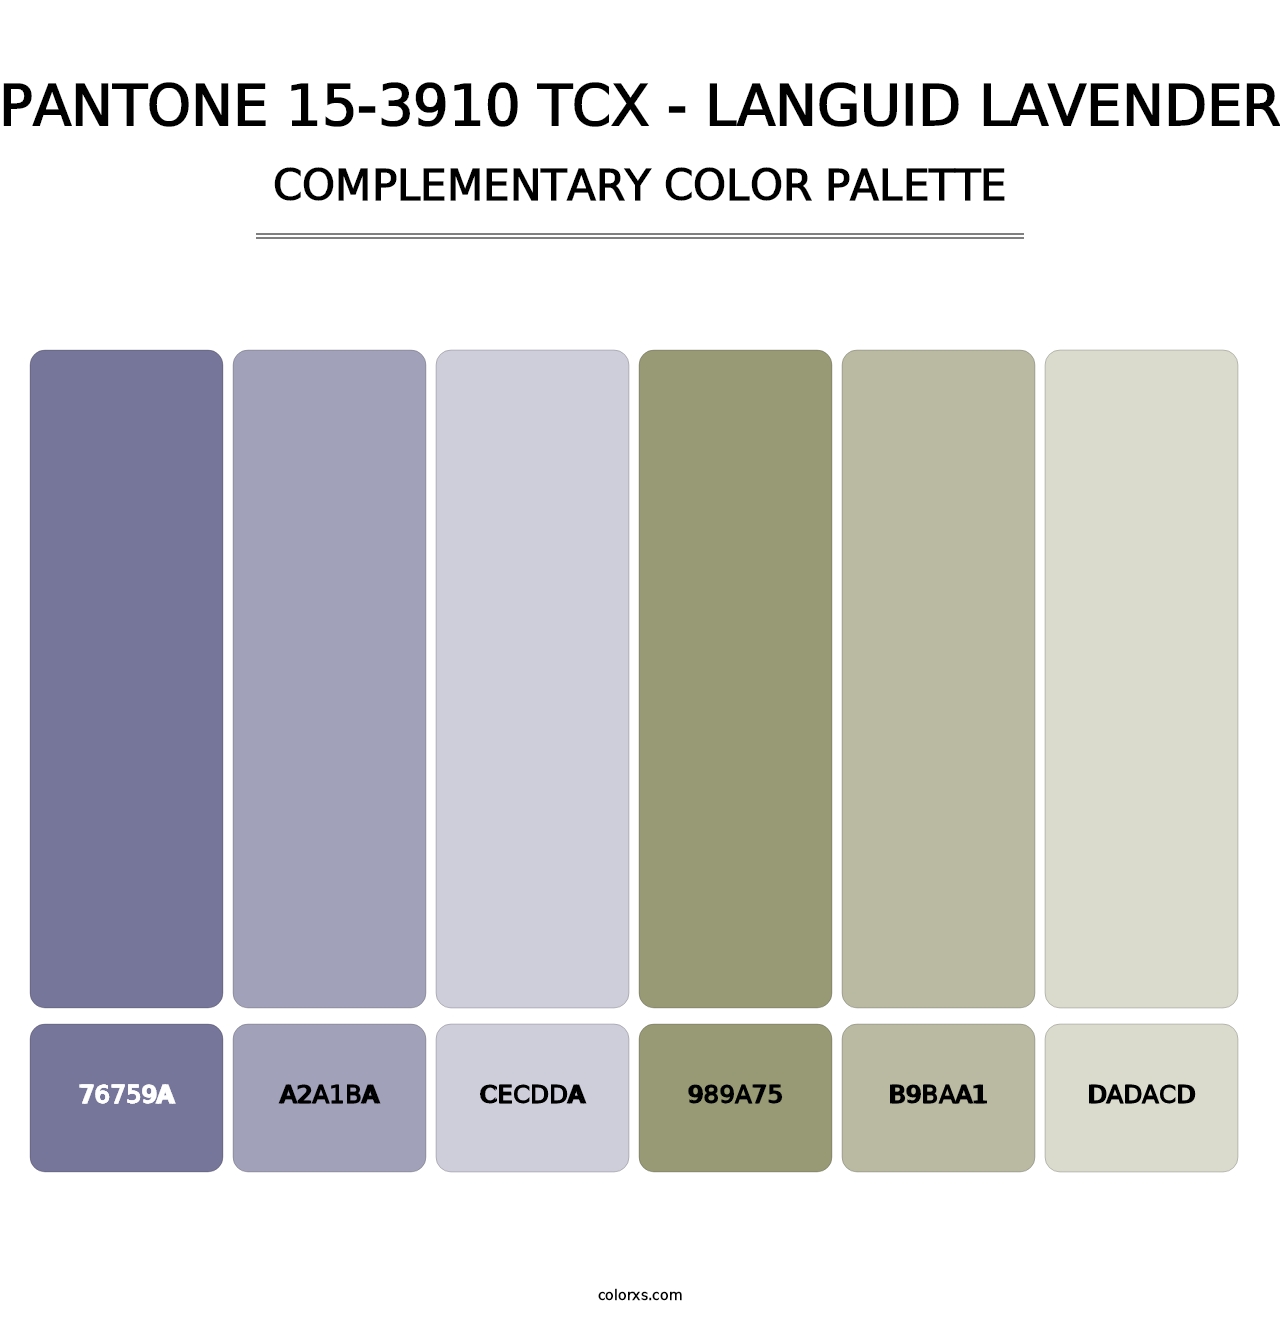 PANTONE 15-3910 TCX - Languid Lavender - Complementary Color Palette